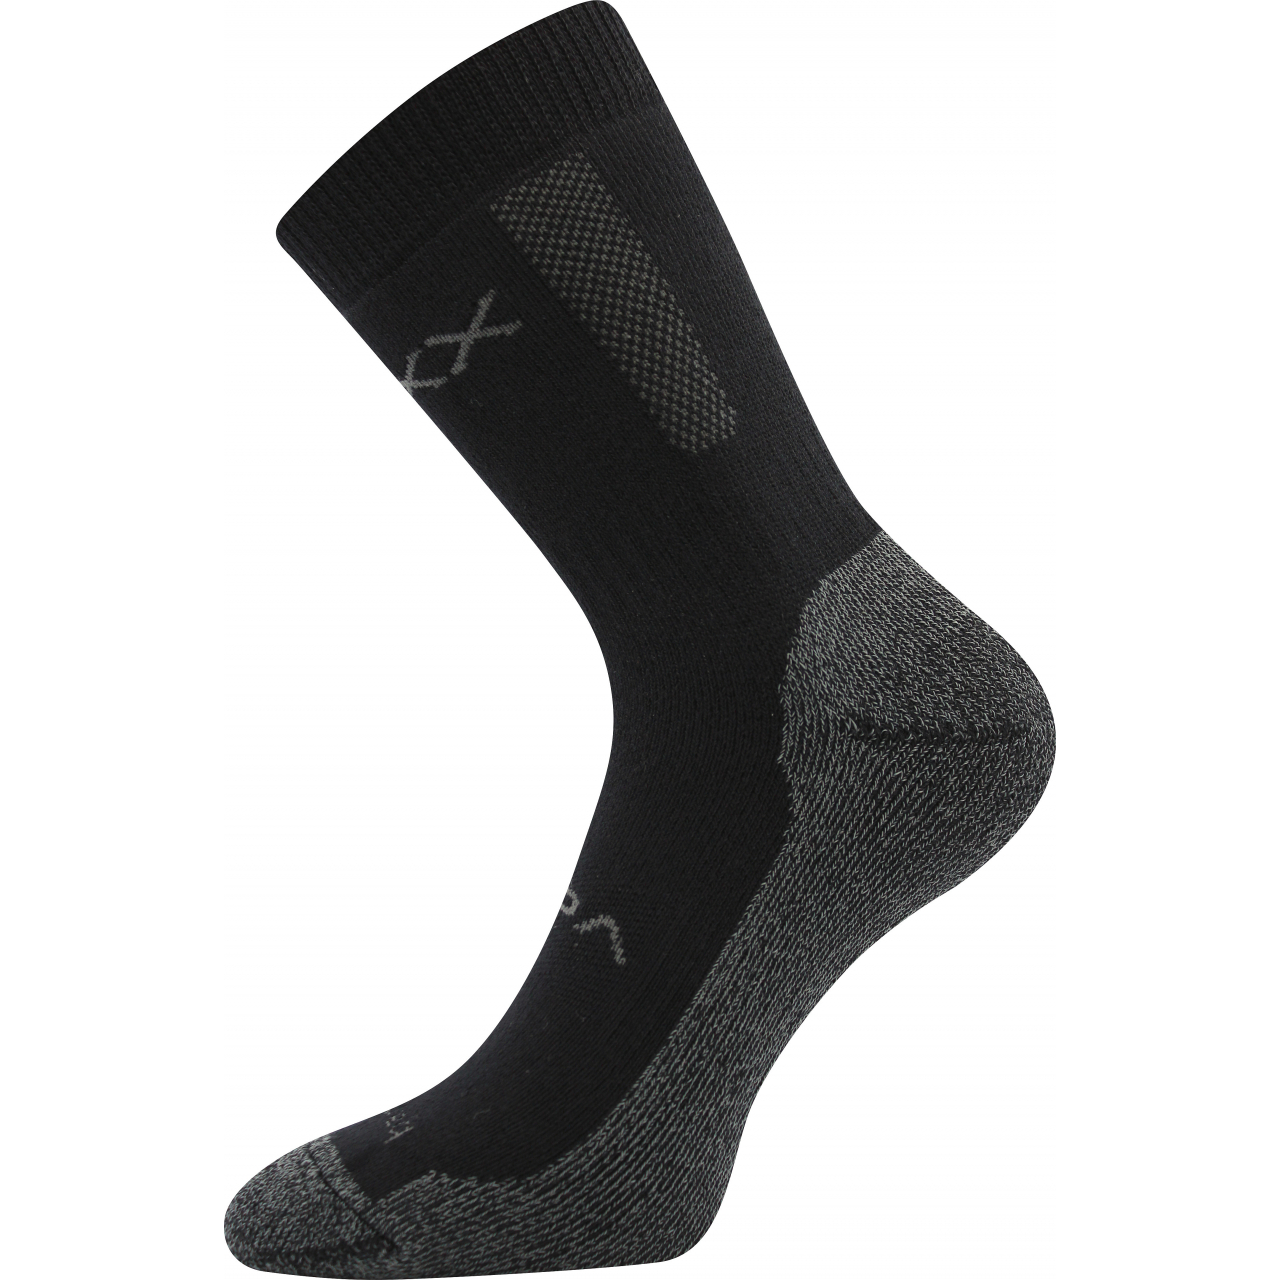 Ponožky silné unisex Voxx Bardee - černé, 43-46